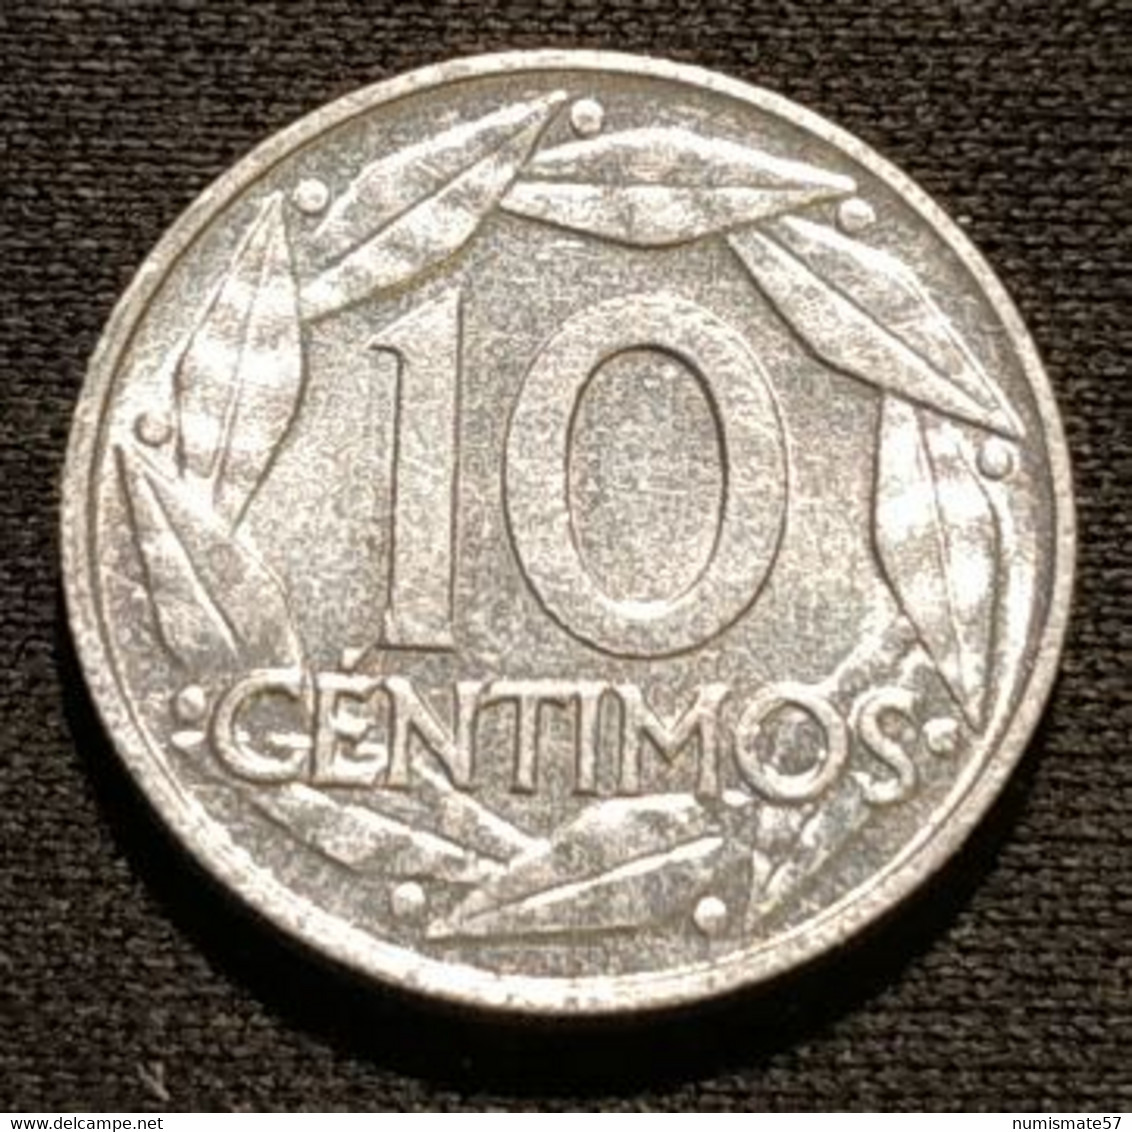 ESPAGNE - ESPANA - SPAIN - 10 CENTIMOS 1959 - FRANCO - KM 790 - 10 Céntimos